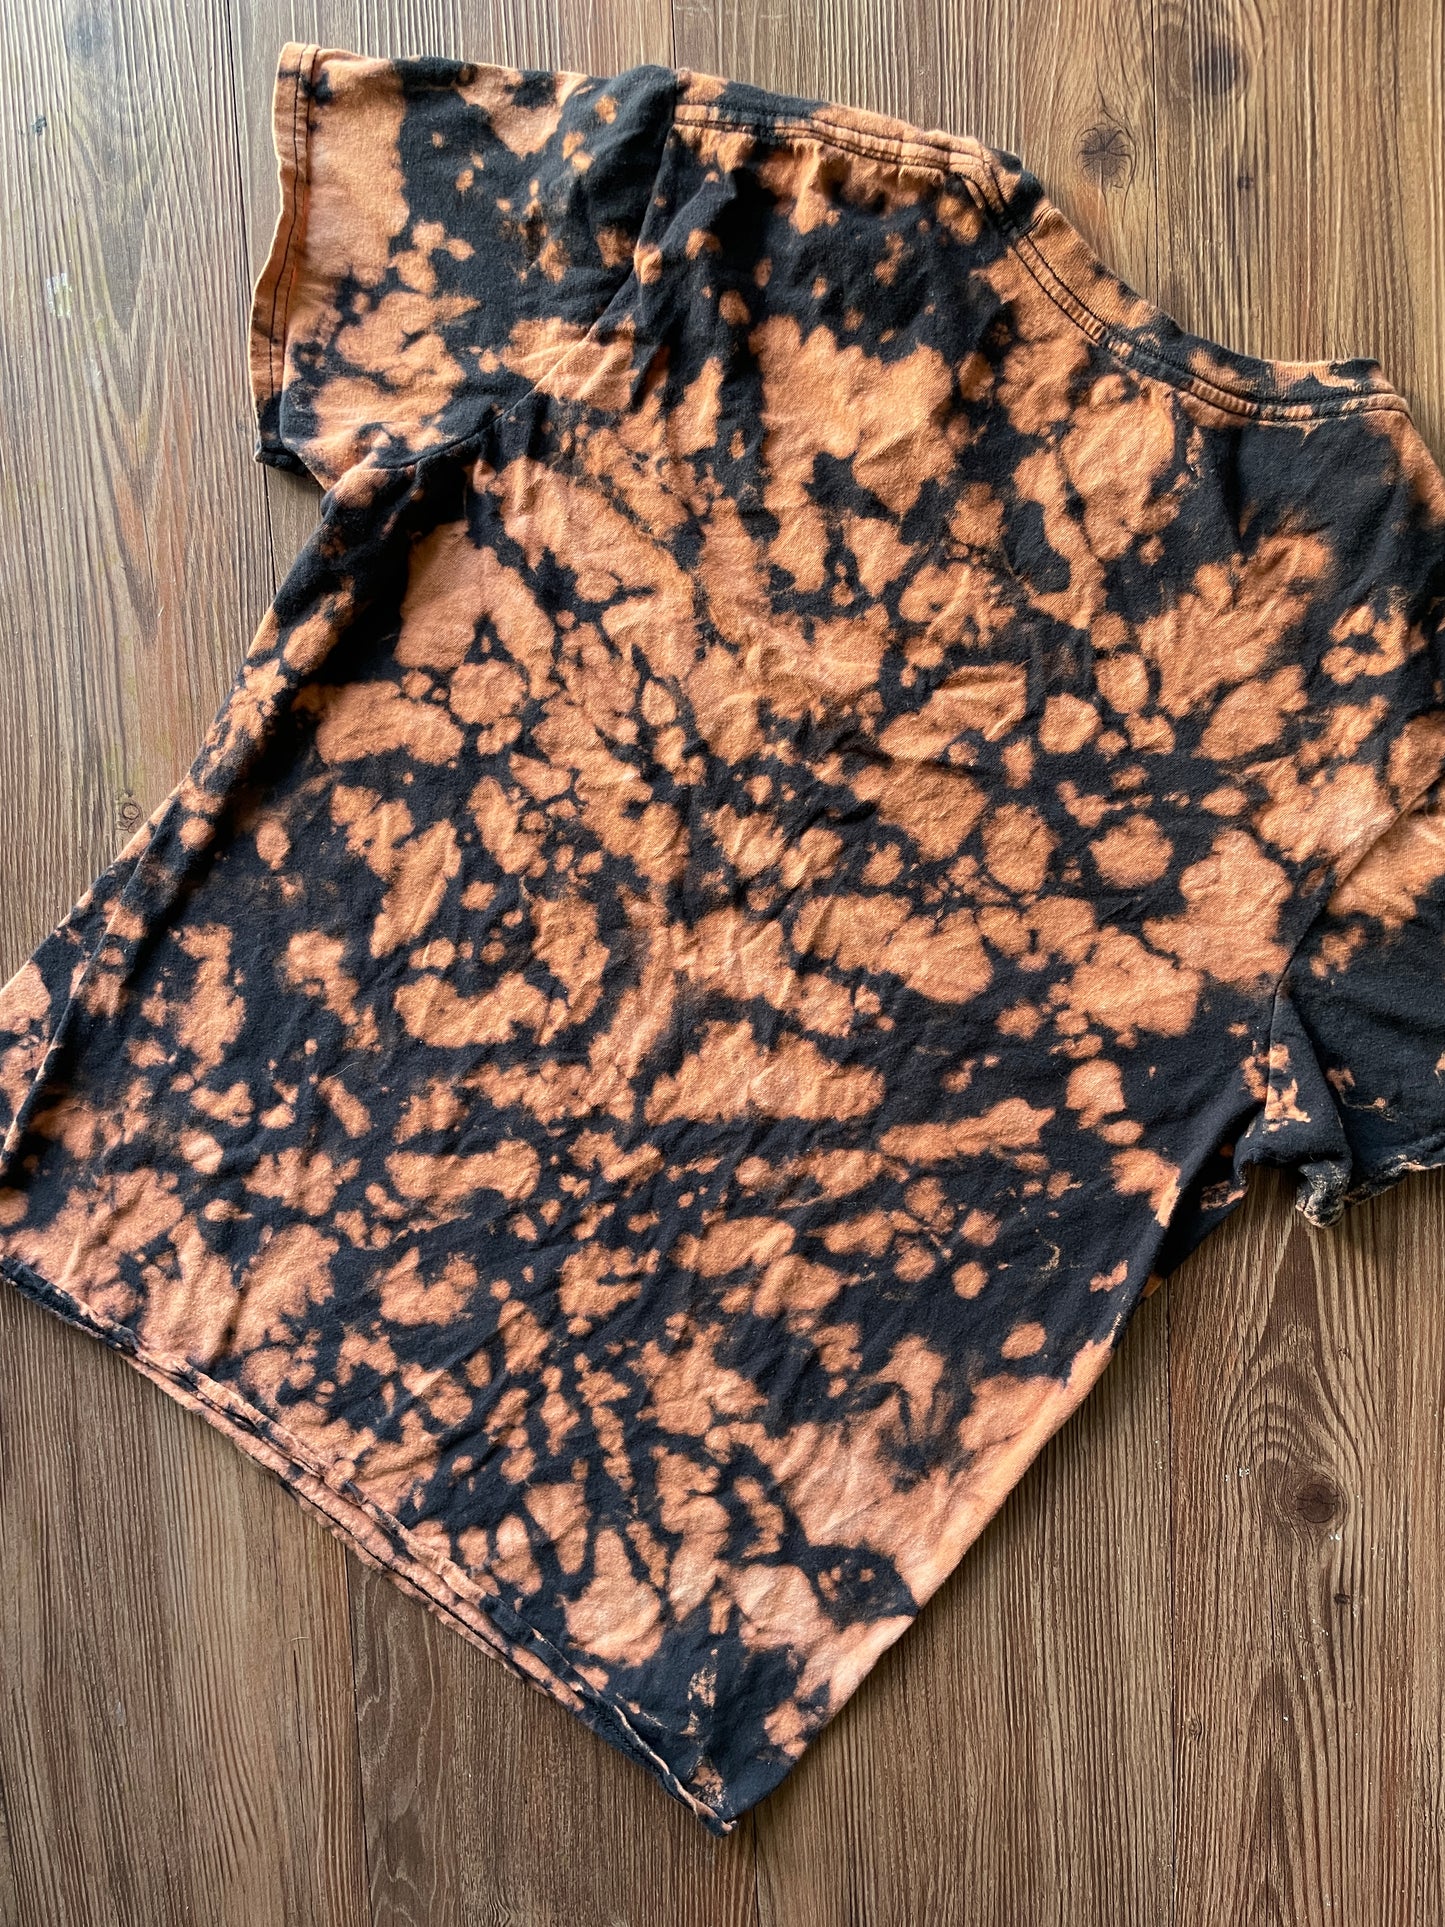 MEDIUM Women's FRIENDS Handmade Acid Dye T-Shirt | One-Of-a-Kind Bleach Dye Short Sleeve